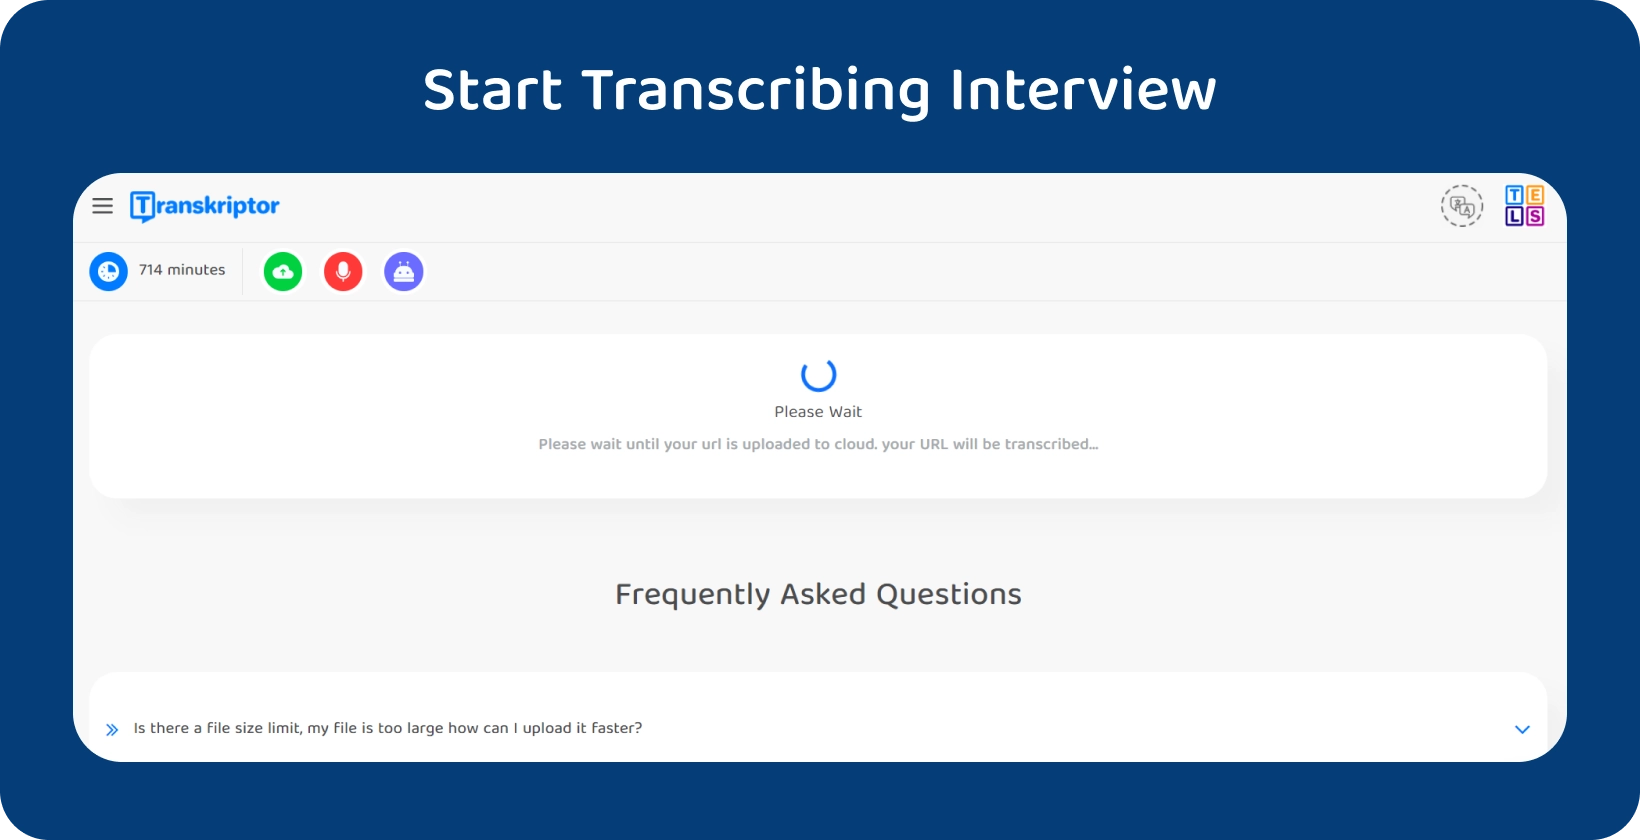 Comience la transcripción de la disertación con Transkriptor, mostrando una entrevista de 714 minutos en espera de procesamiento.